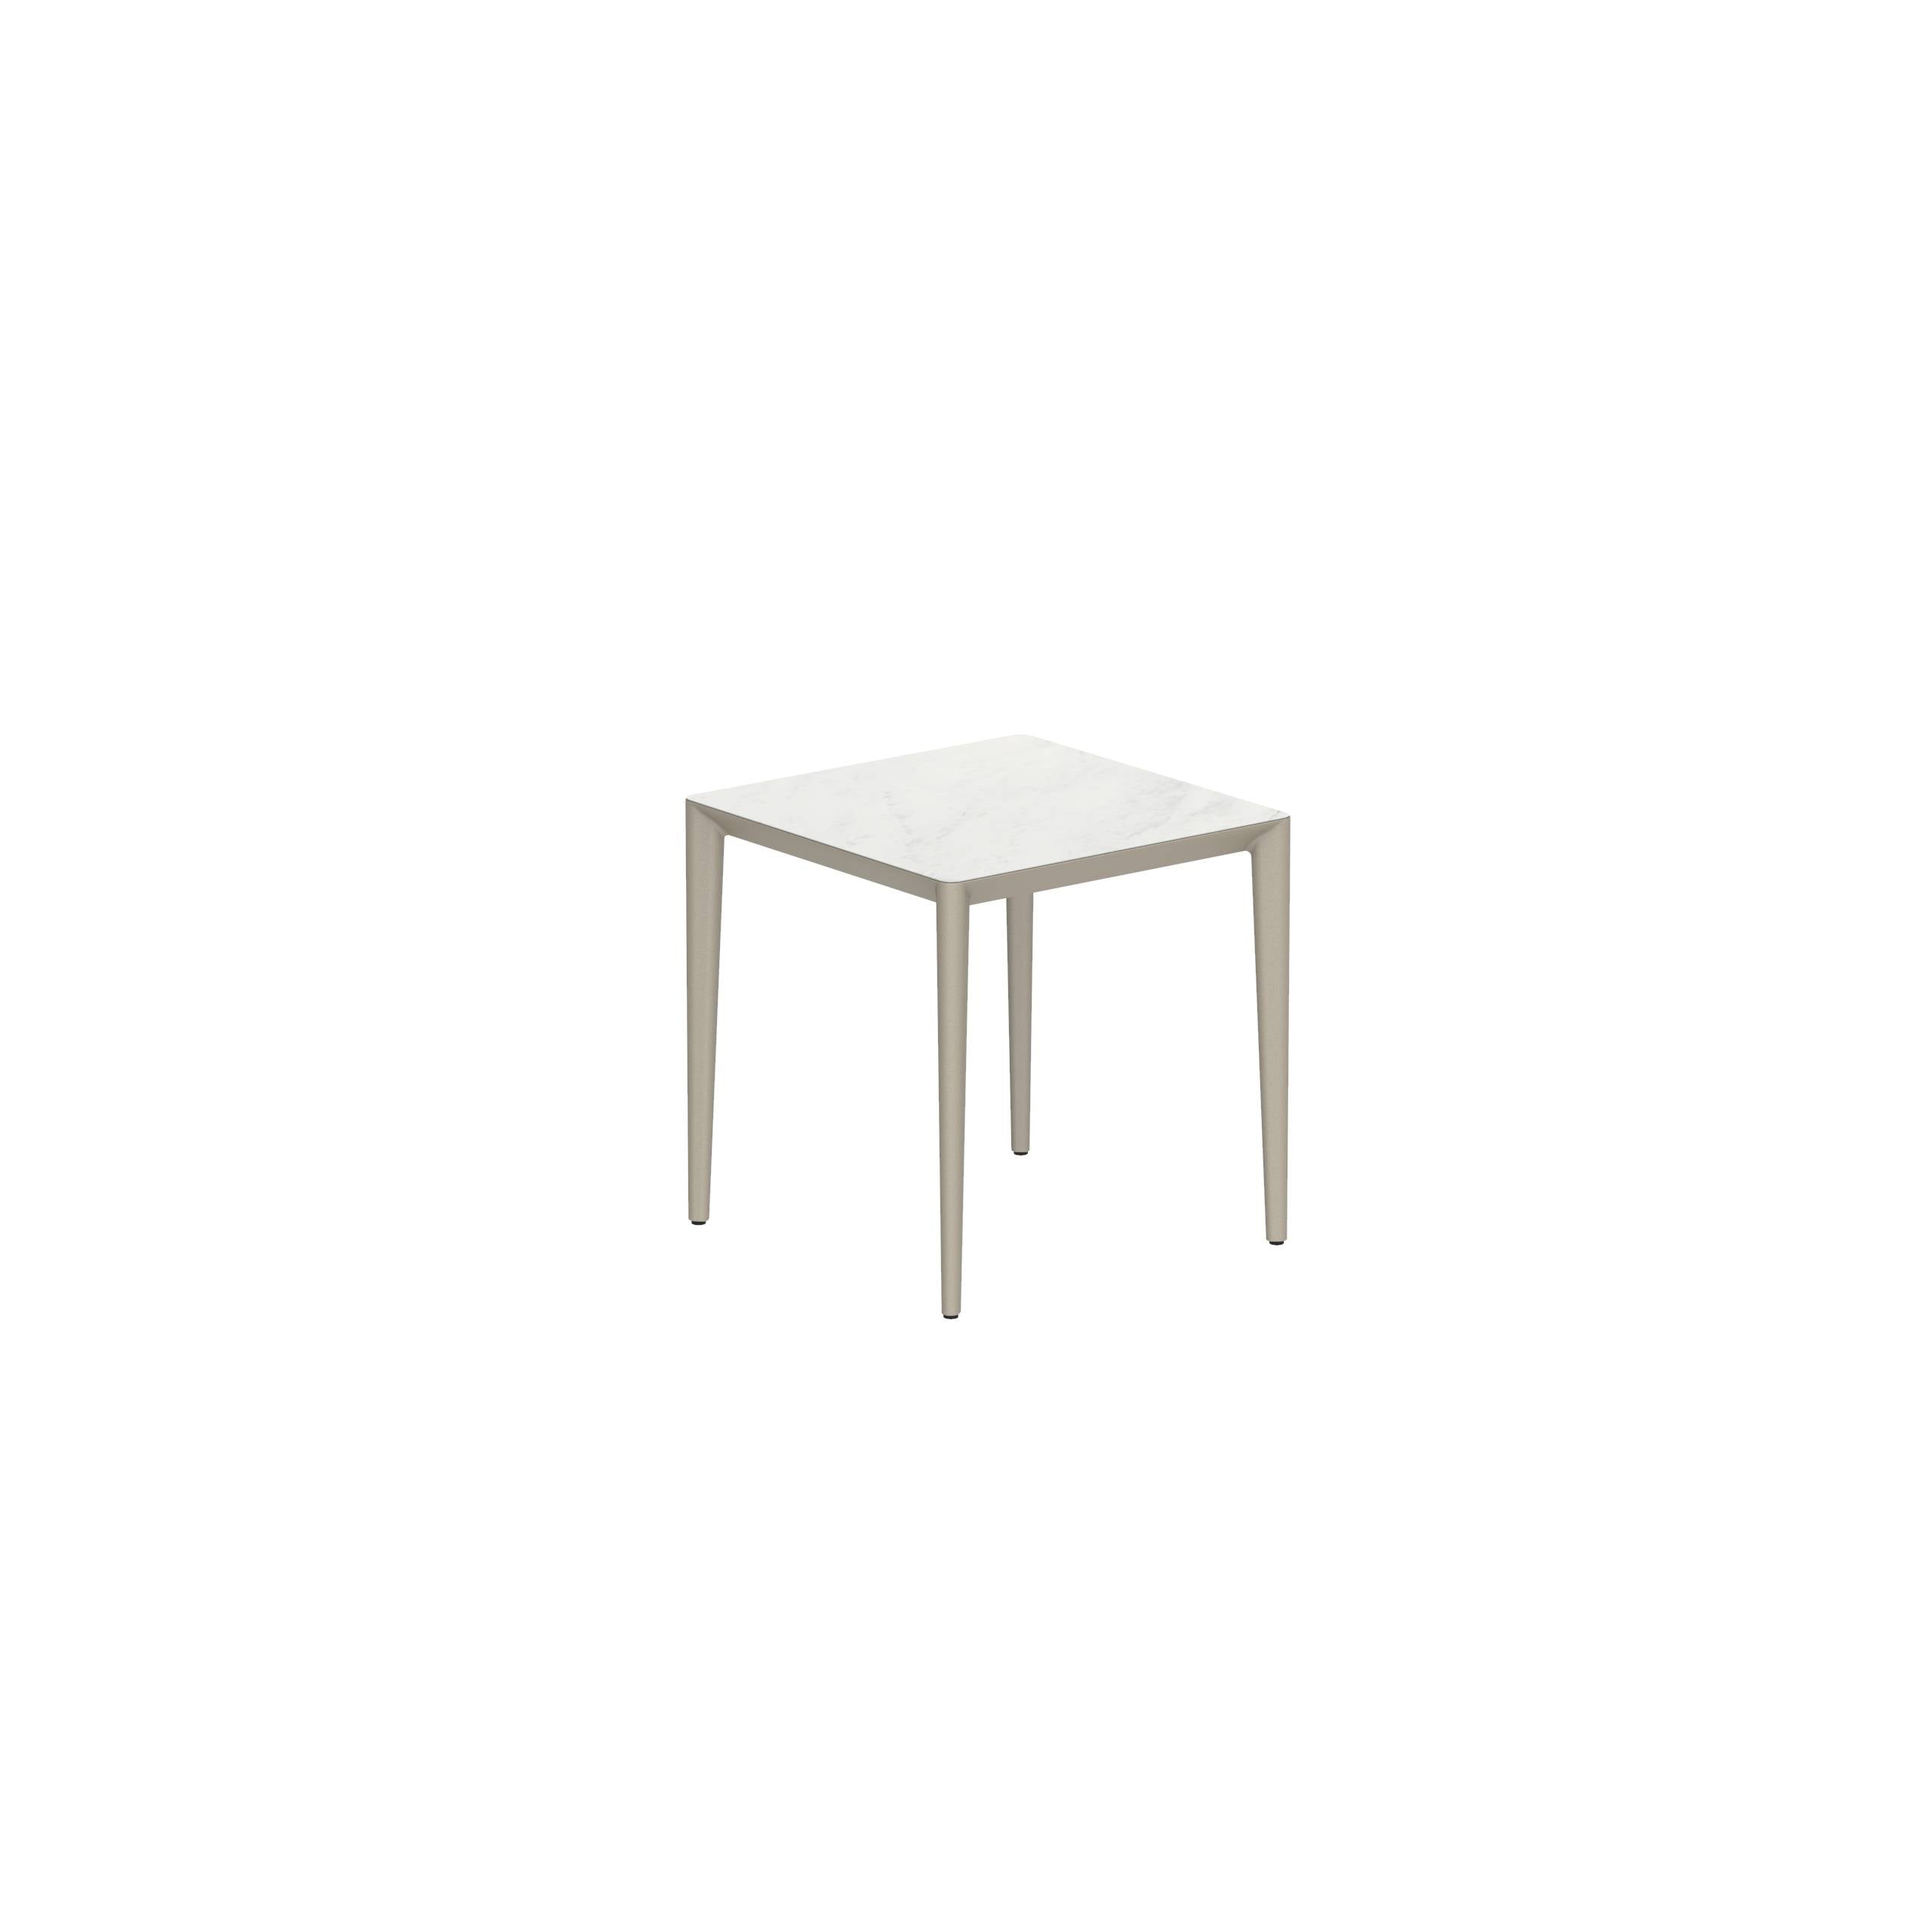 U-Nite Table 74x74cm Sand With Ceramic Tabletop In Bianco Statuario